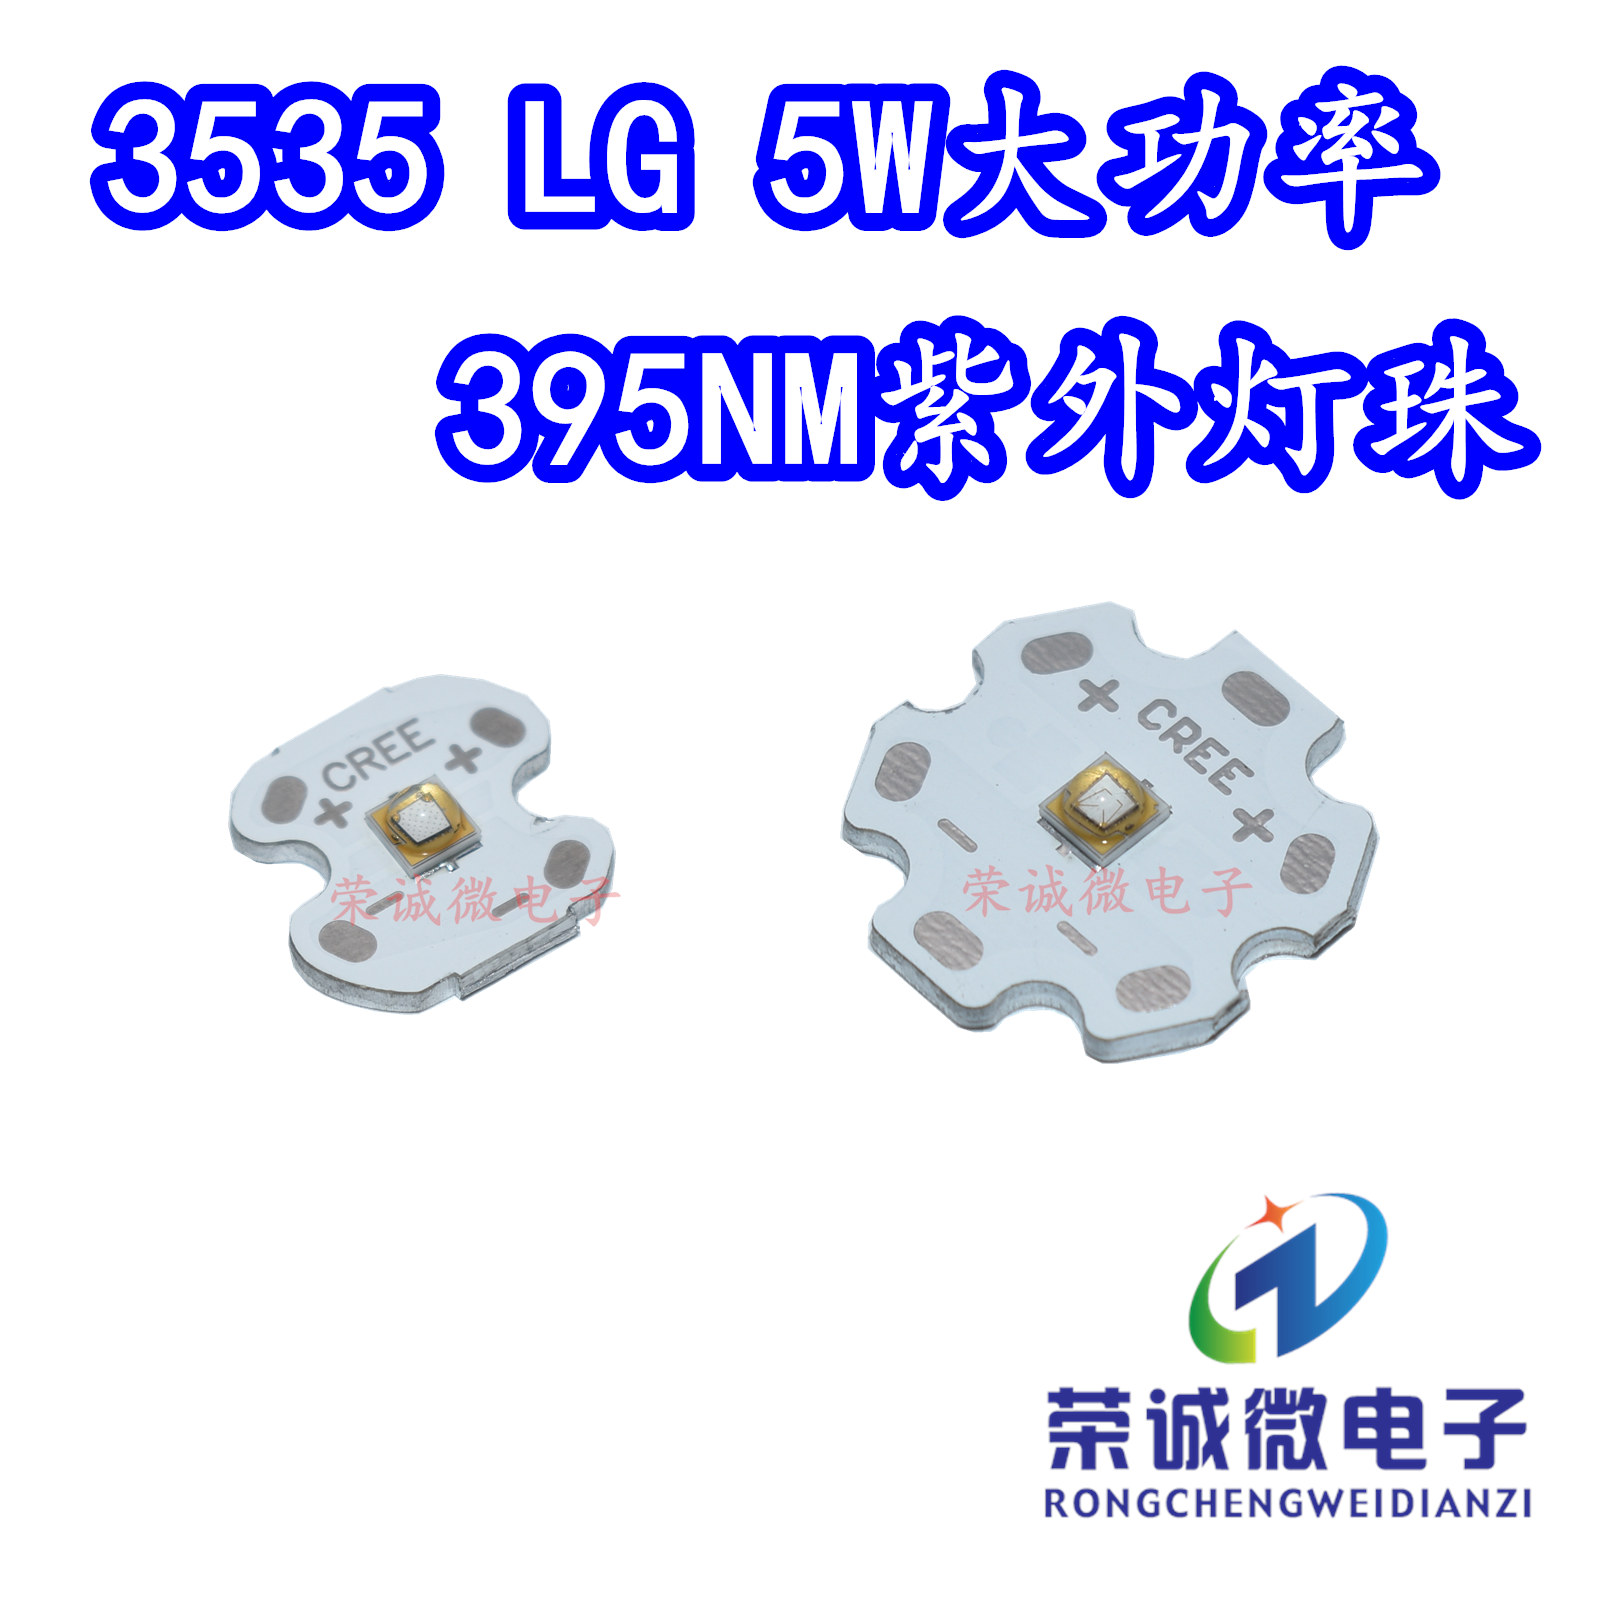 LG大功率 5W395NM紫外线LED灯珠UV固化绿油照蝎子荧光紫光灯芯